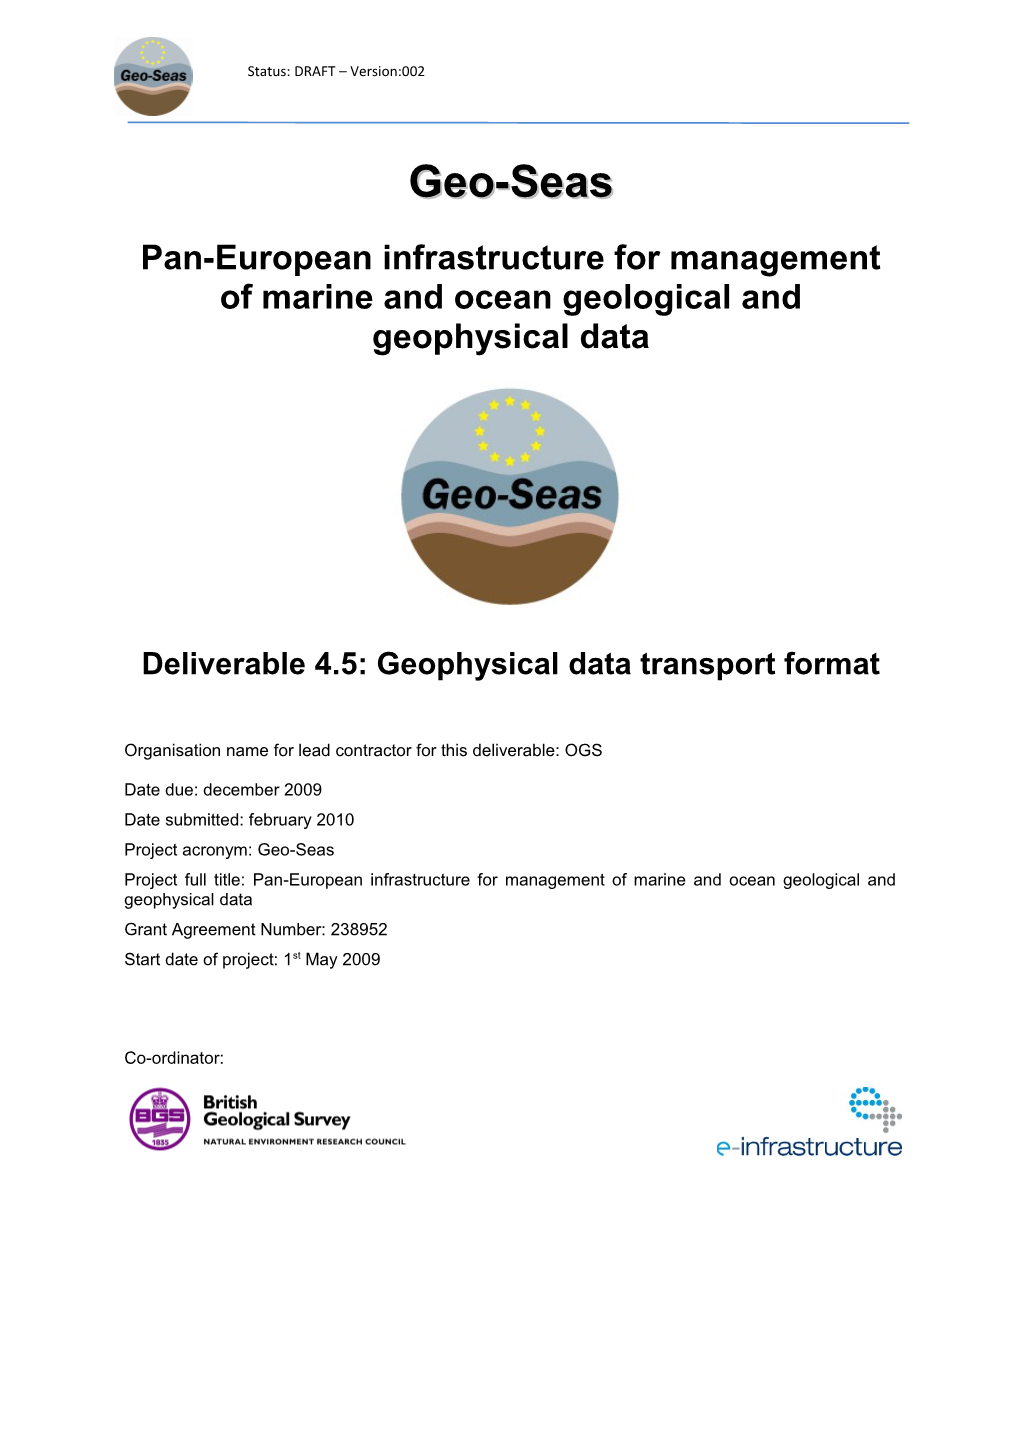 Deliverable 4.5: Geophysical Data Transport Format